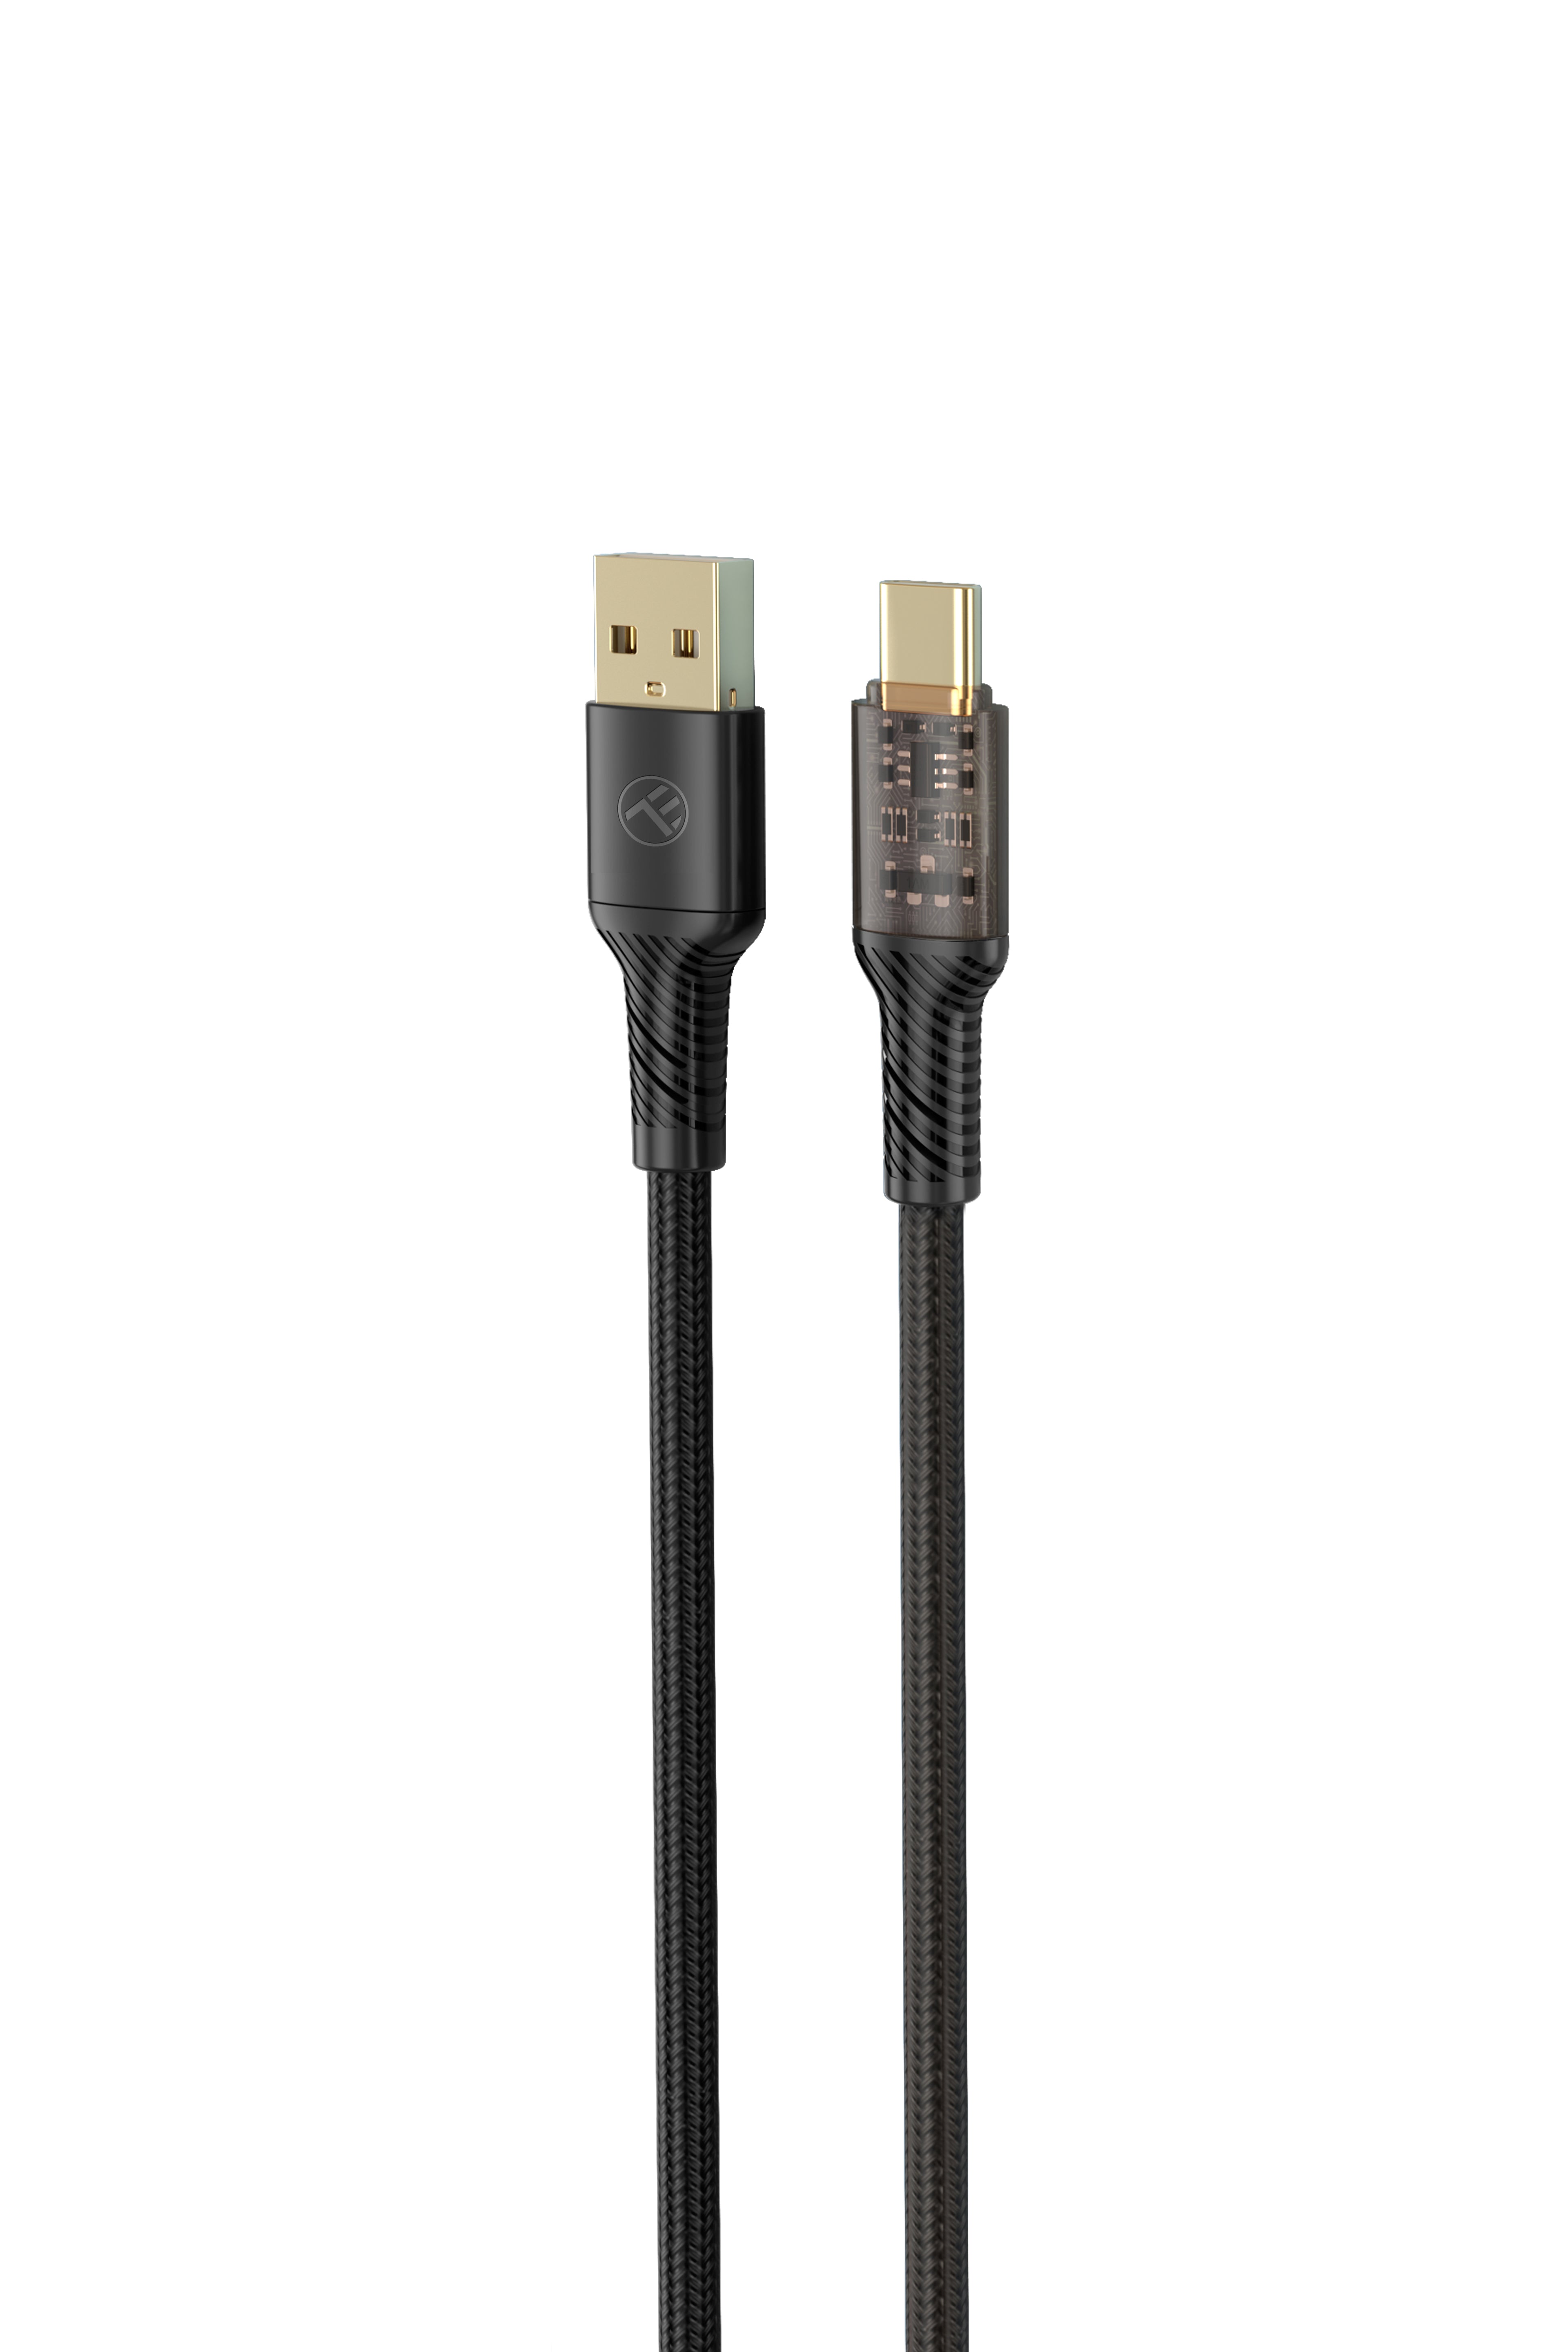 Cargador Coche USB 5V 1A + cable usb a lightning